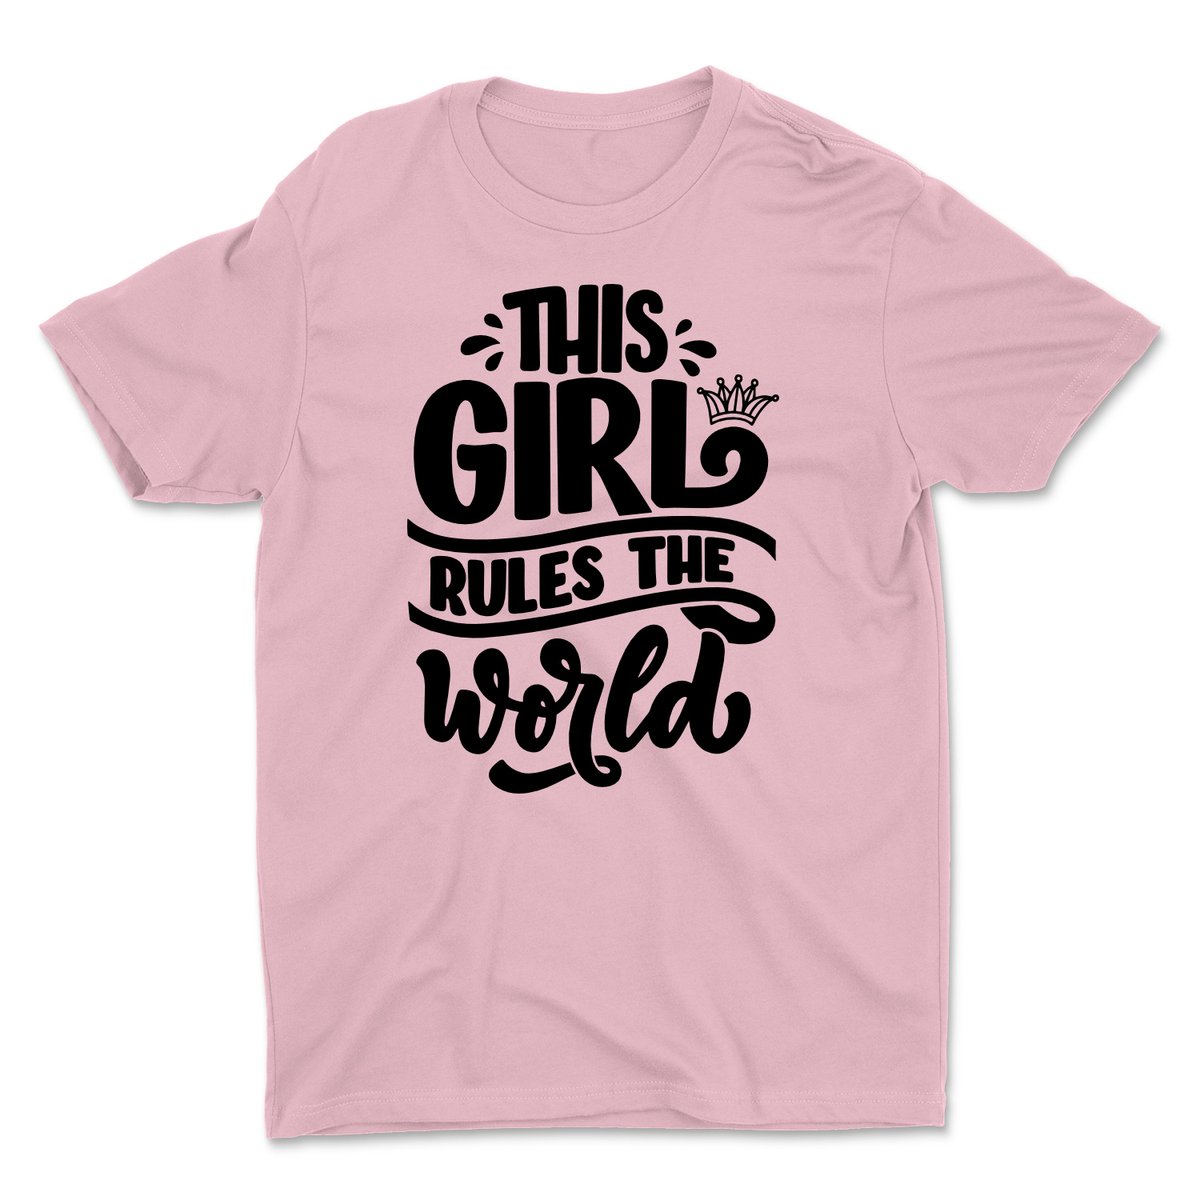 This Girl Rules the World.
tizzytees.com/collections/wo…
.
#tshirt #tshirtdesign #tshirtslovers #tshirtbusiness #tshirtfun #tshirtlife #tshirtlove #funshirt #girlpower #girlsrule #girlsrule🎀 #girlsruletheworld #pinkshirt